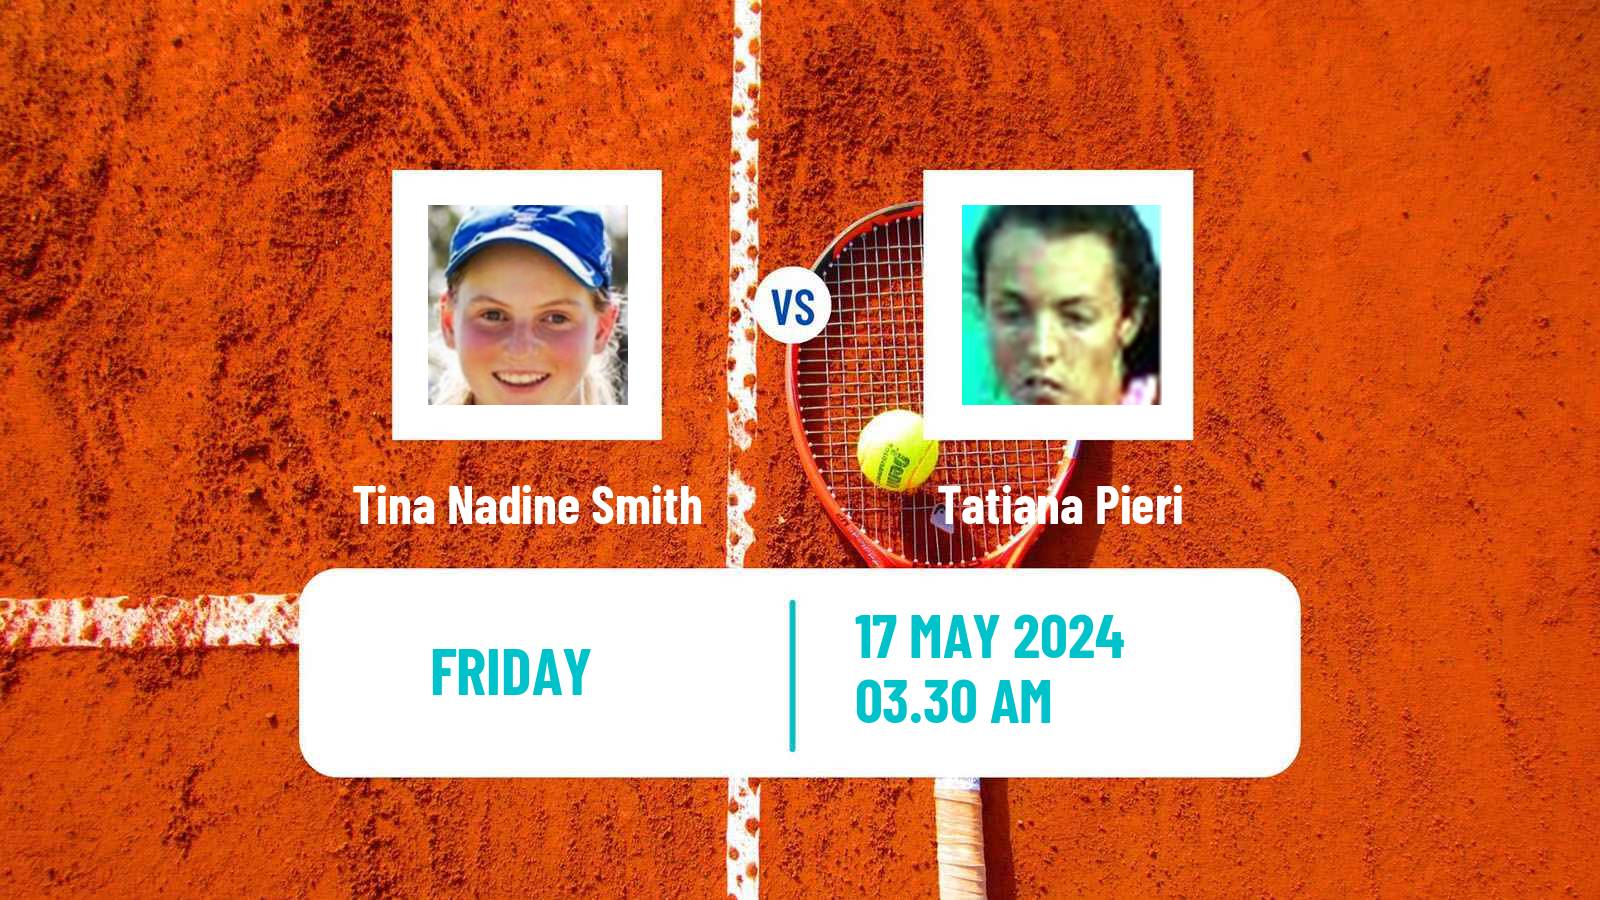 Tennis ITF W35 Villach Women Tina Nadine Smith - Tatiana Pieri